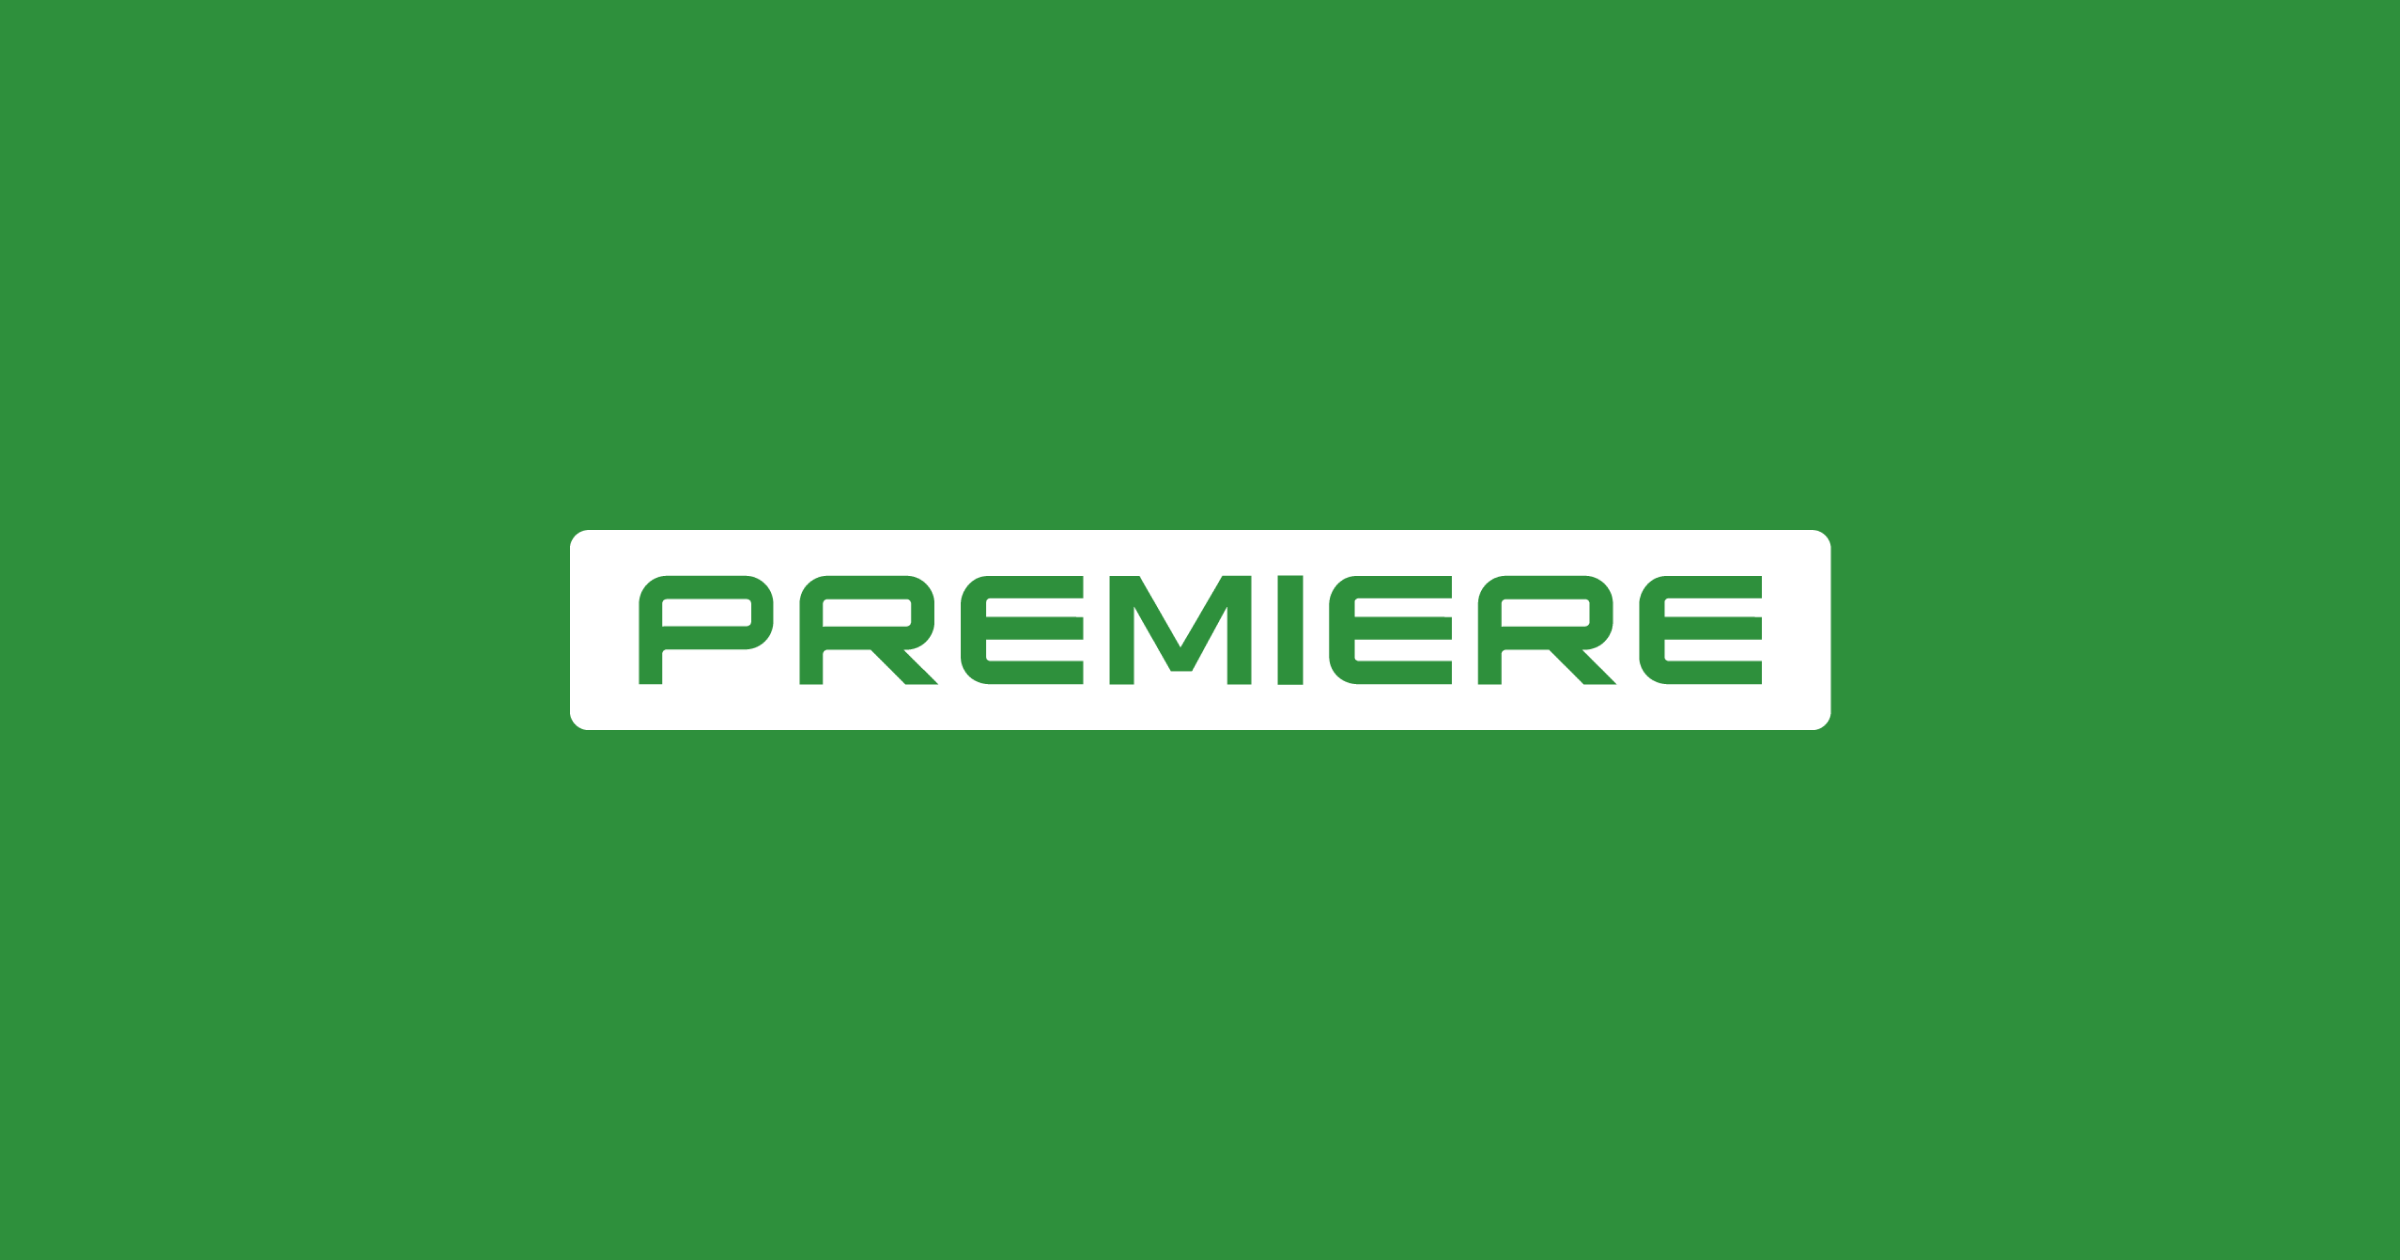 NET Premiere FC, 0800 777 8877